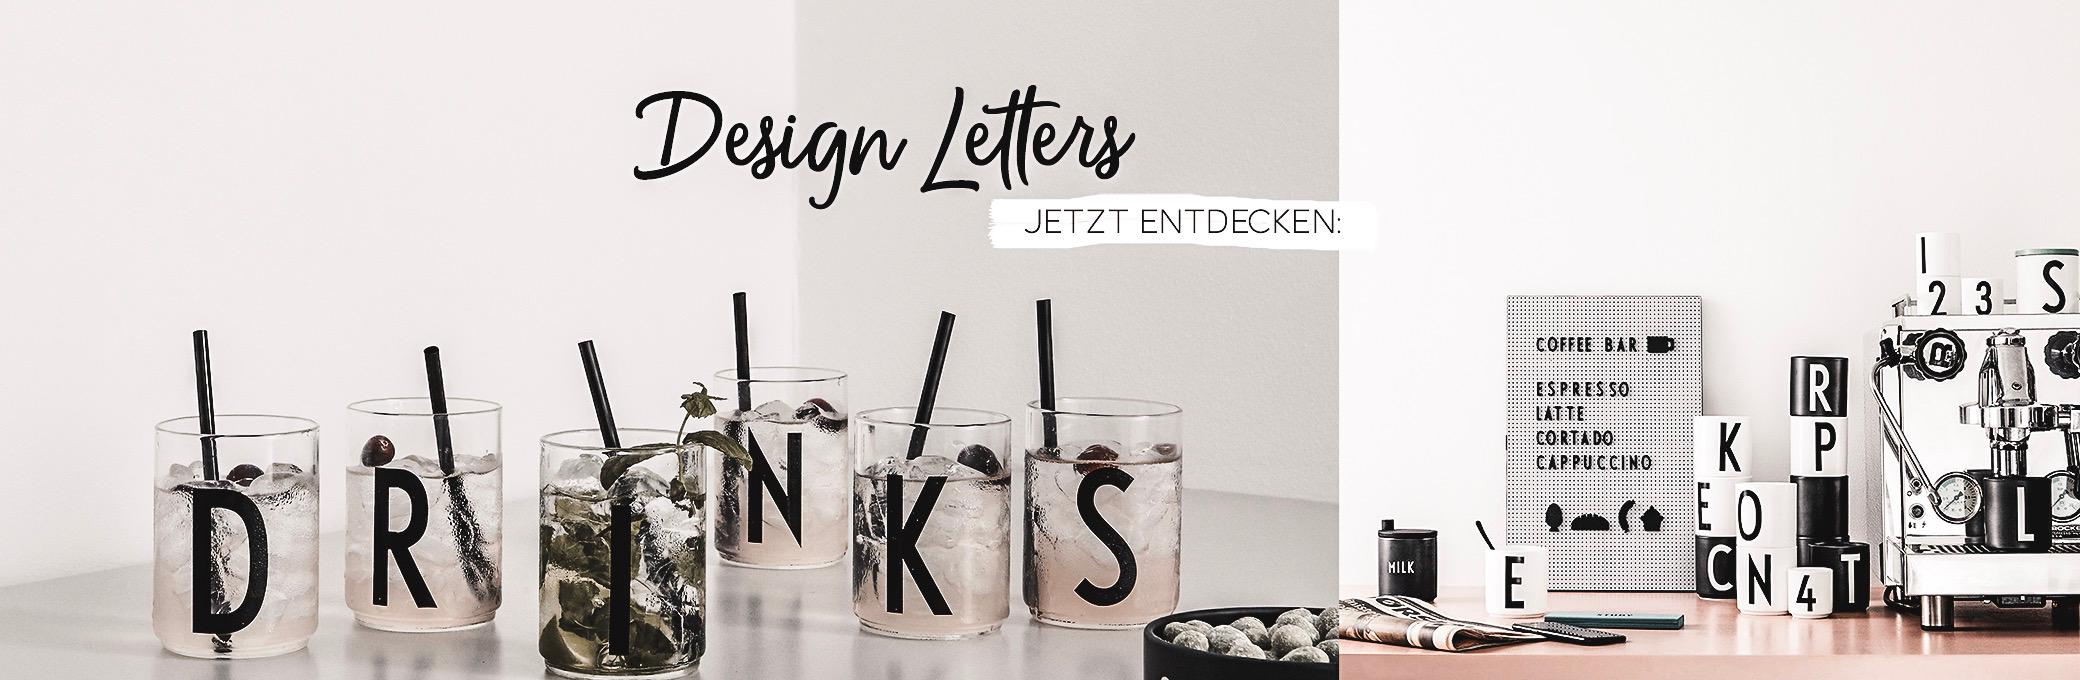 SirHenry’s - Concept Store Bocholt Design Letters